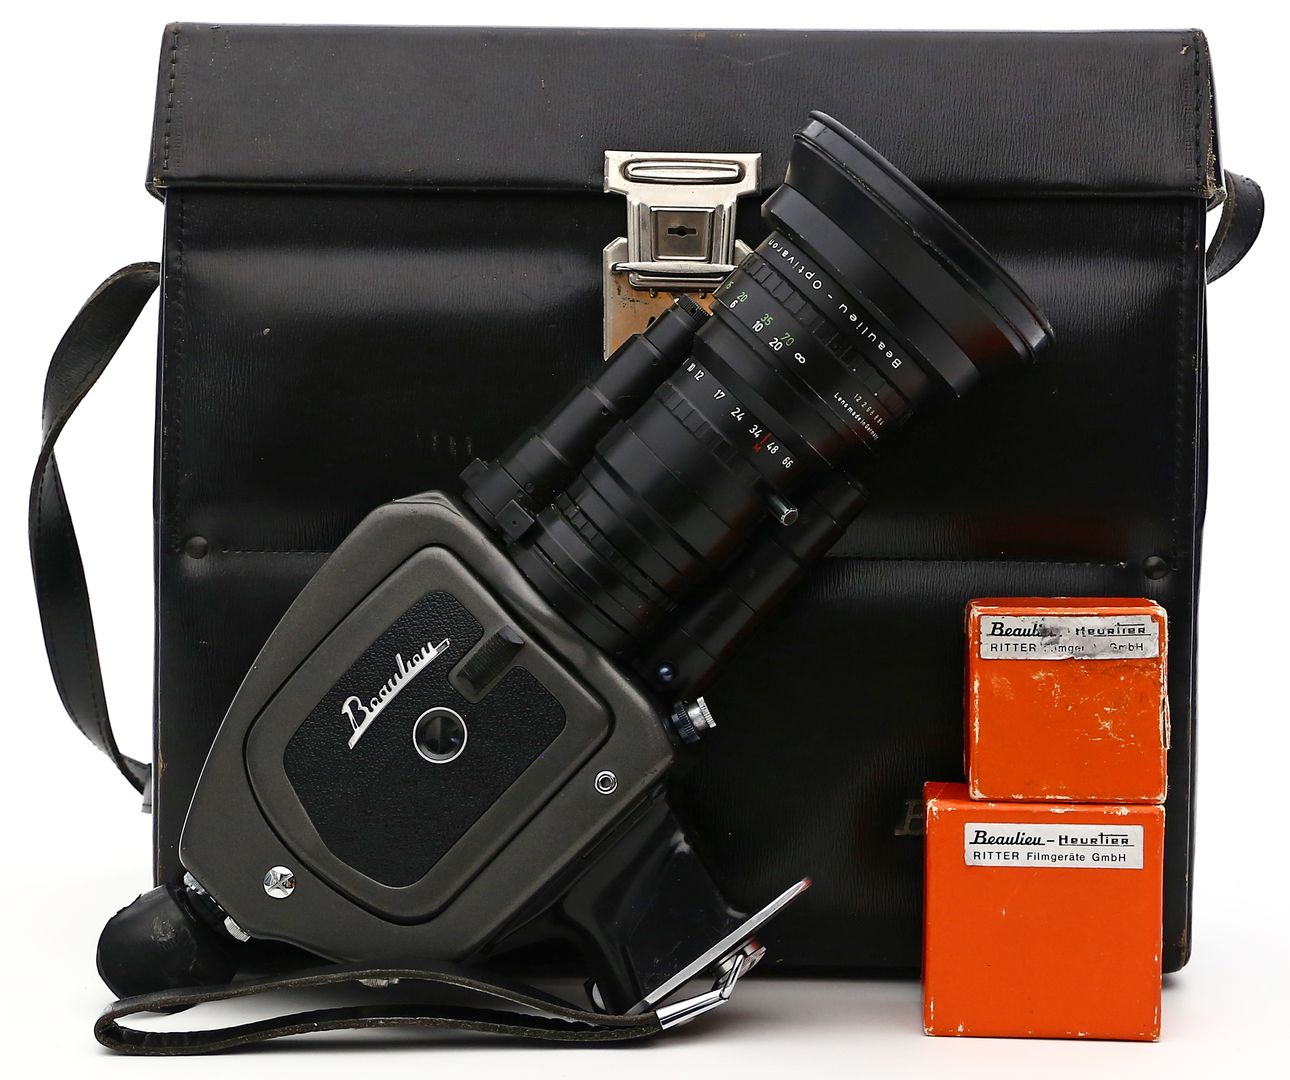 Super Filmkamera 4008ZM II, Beaulieu.